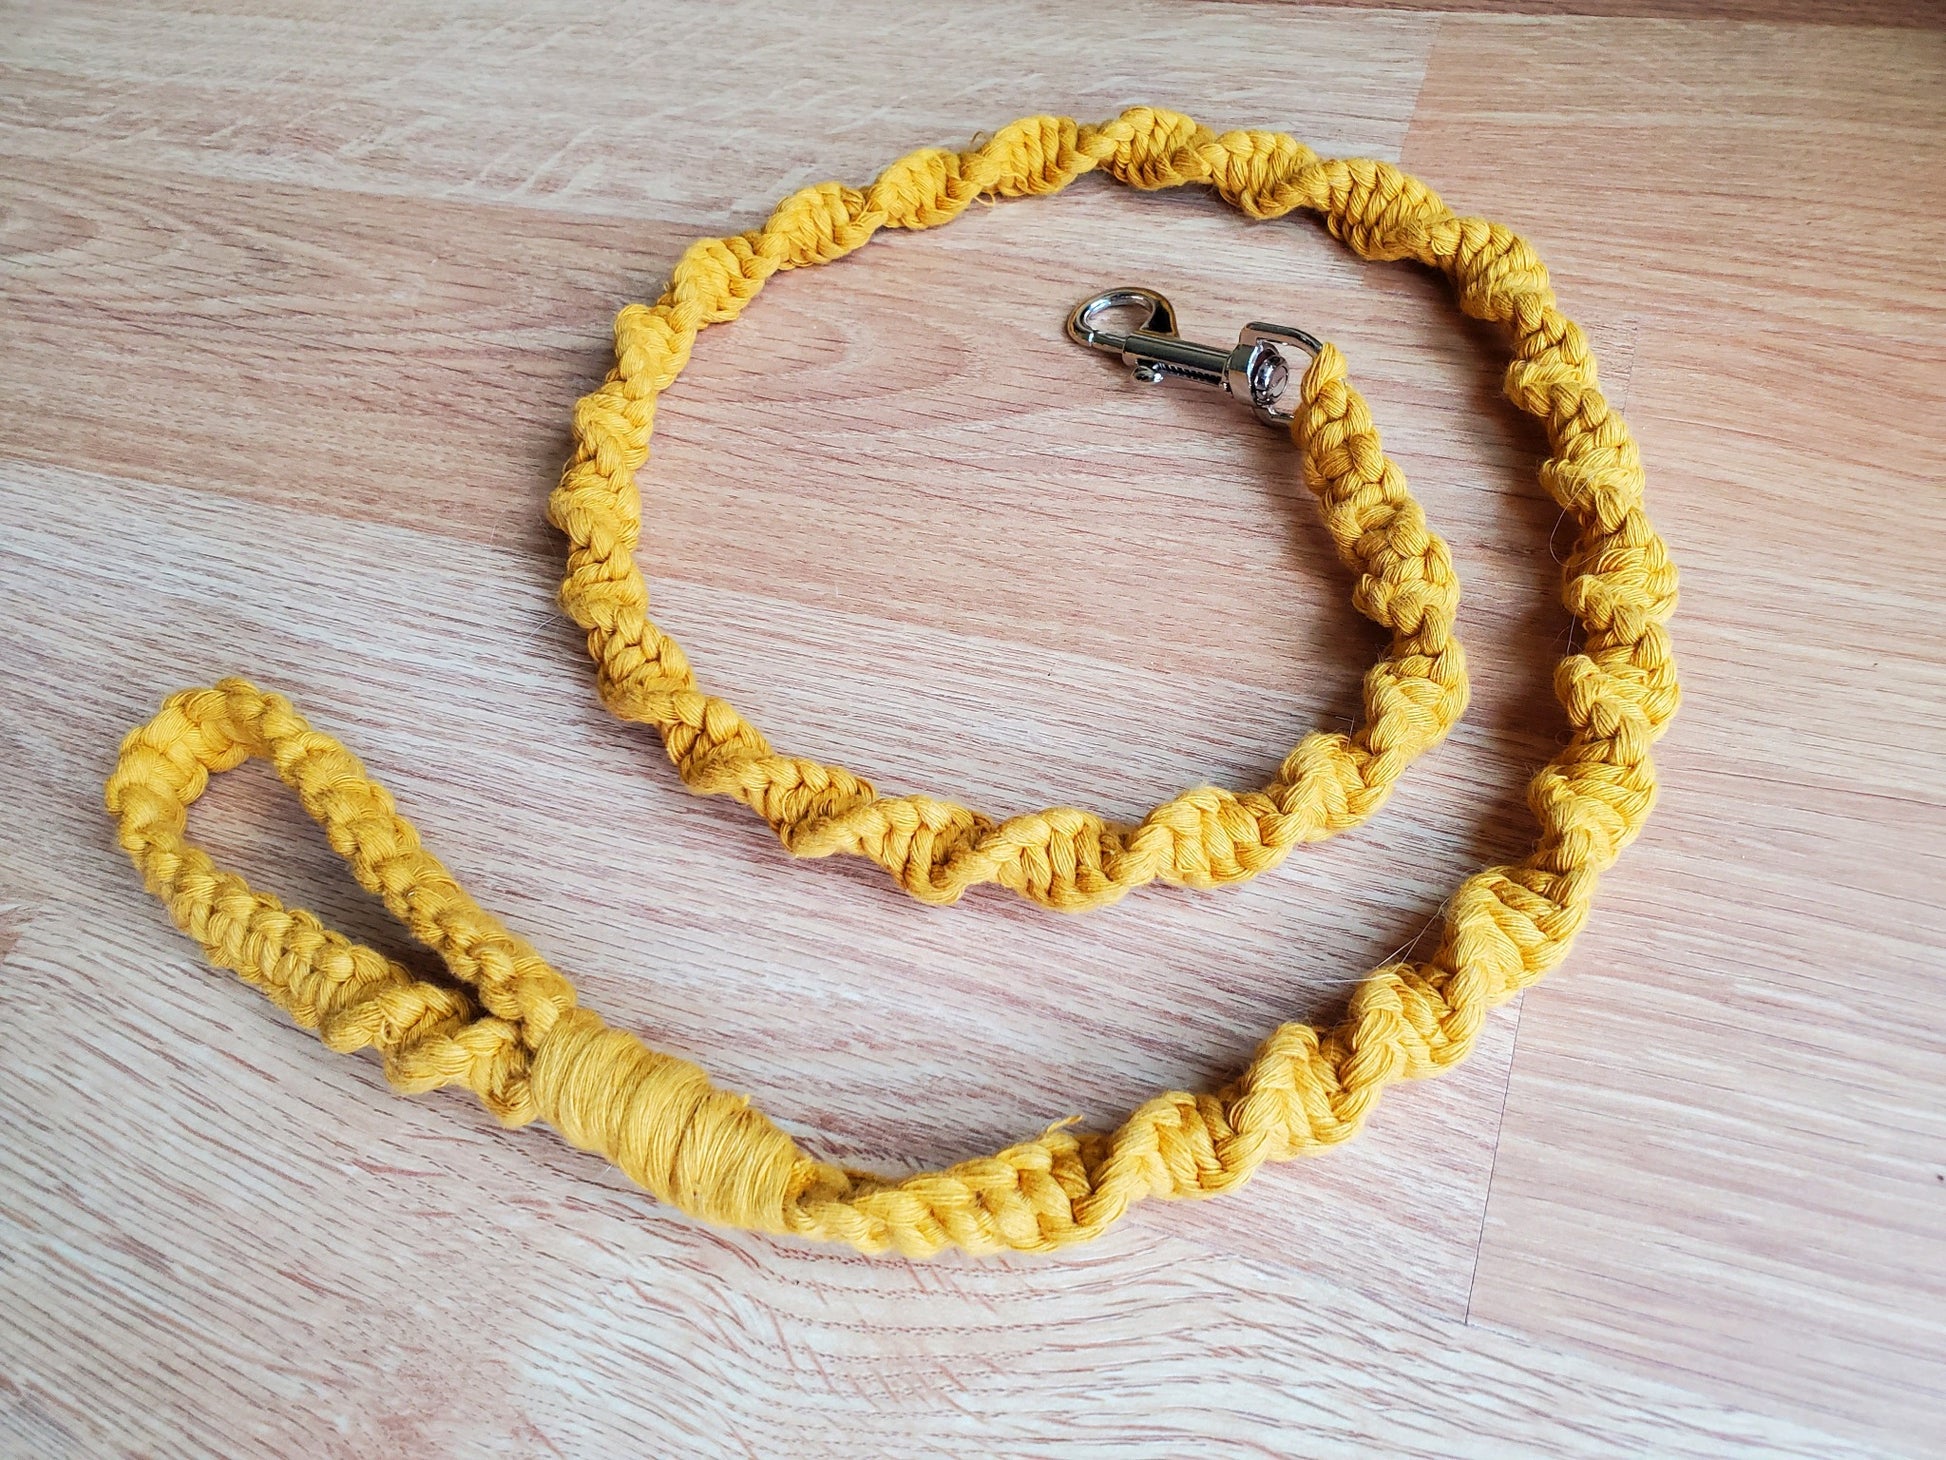 Gold dog leash macrame style